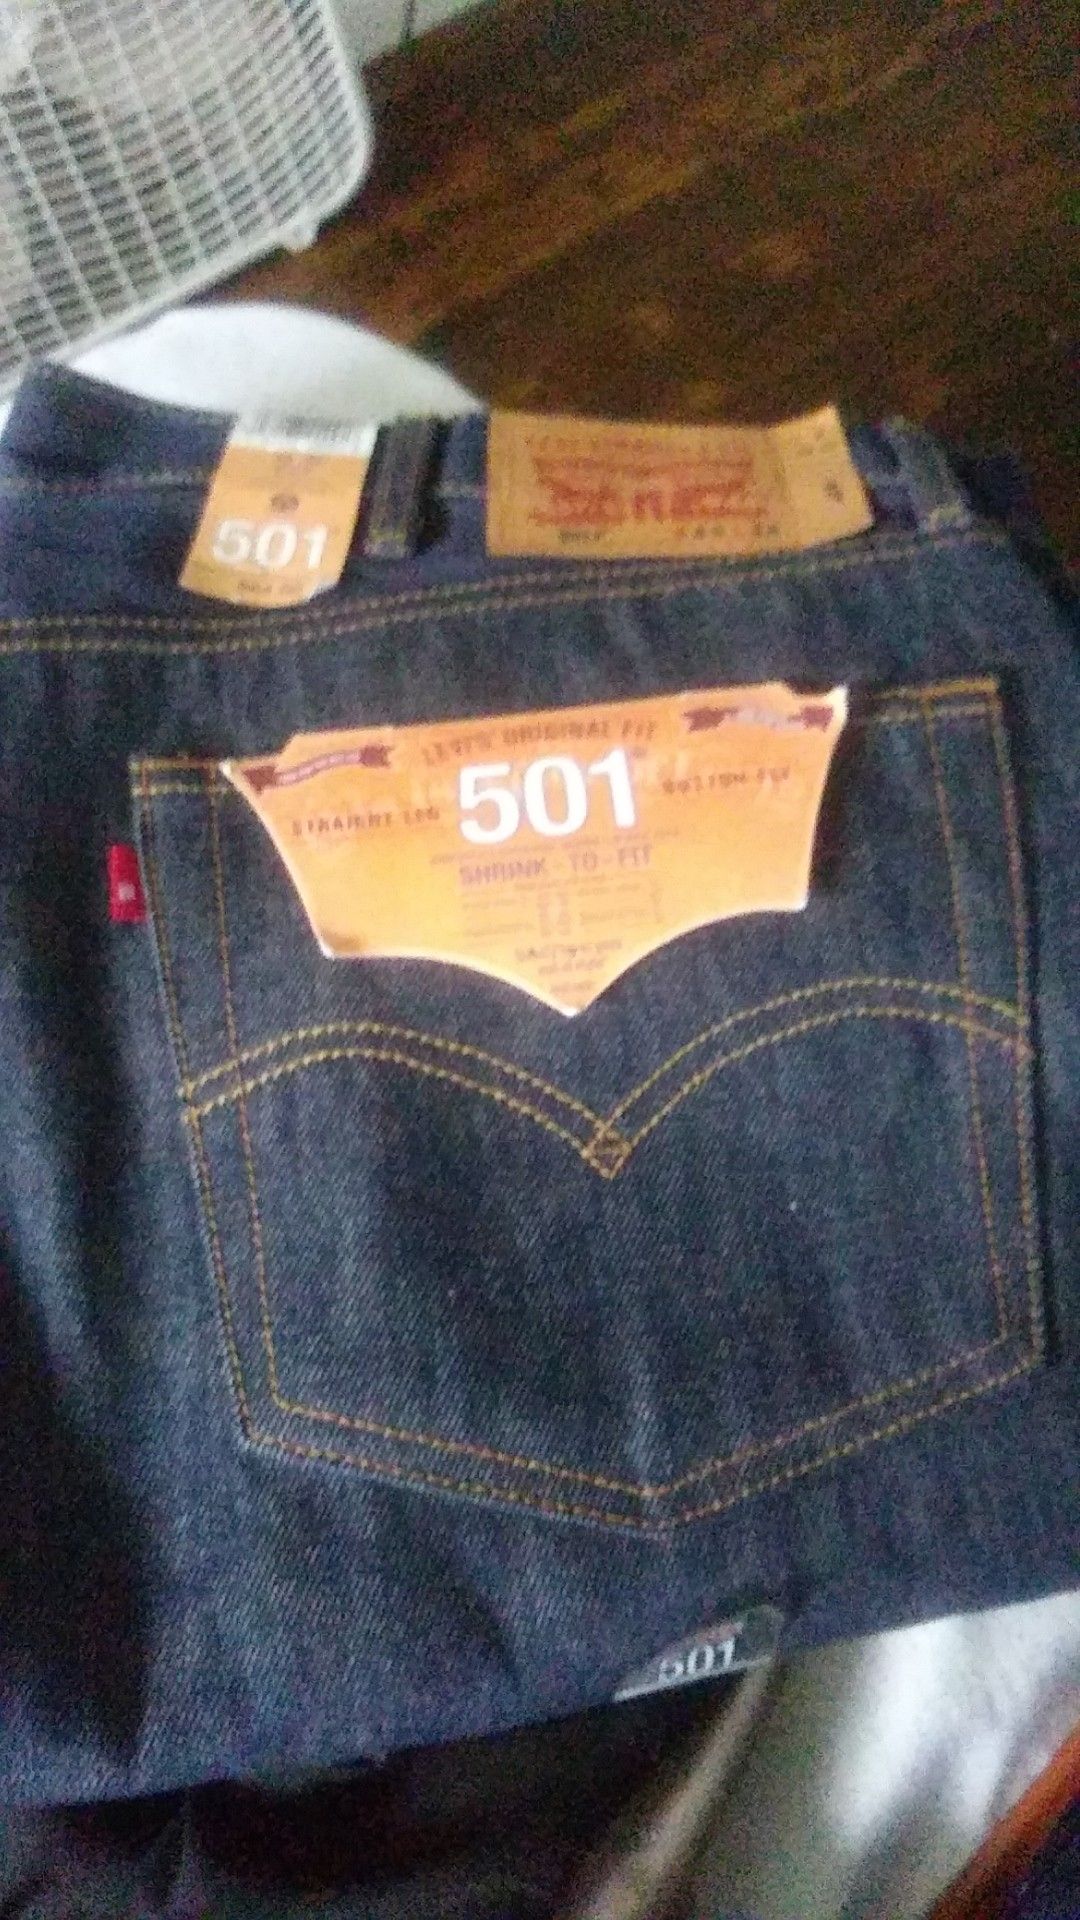 Levi's 501 jeans size 44x34